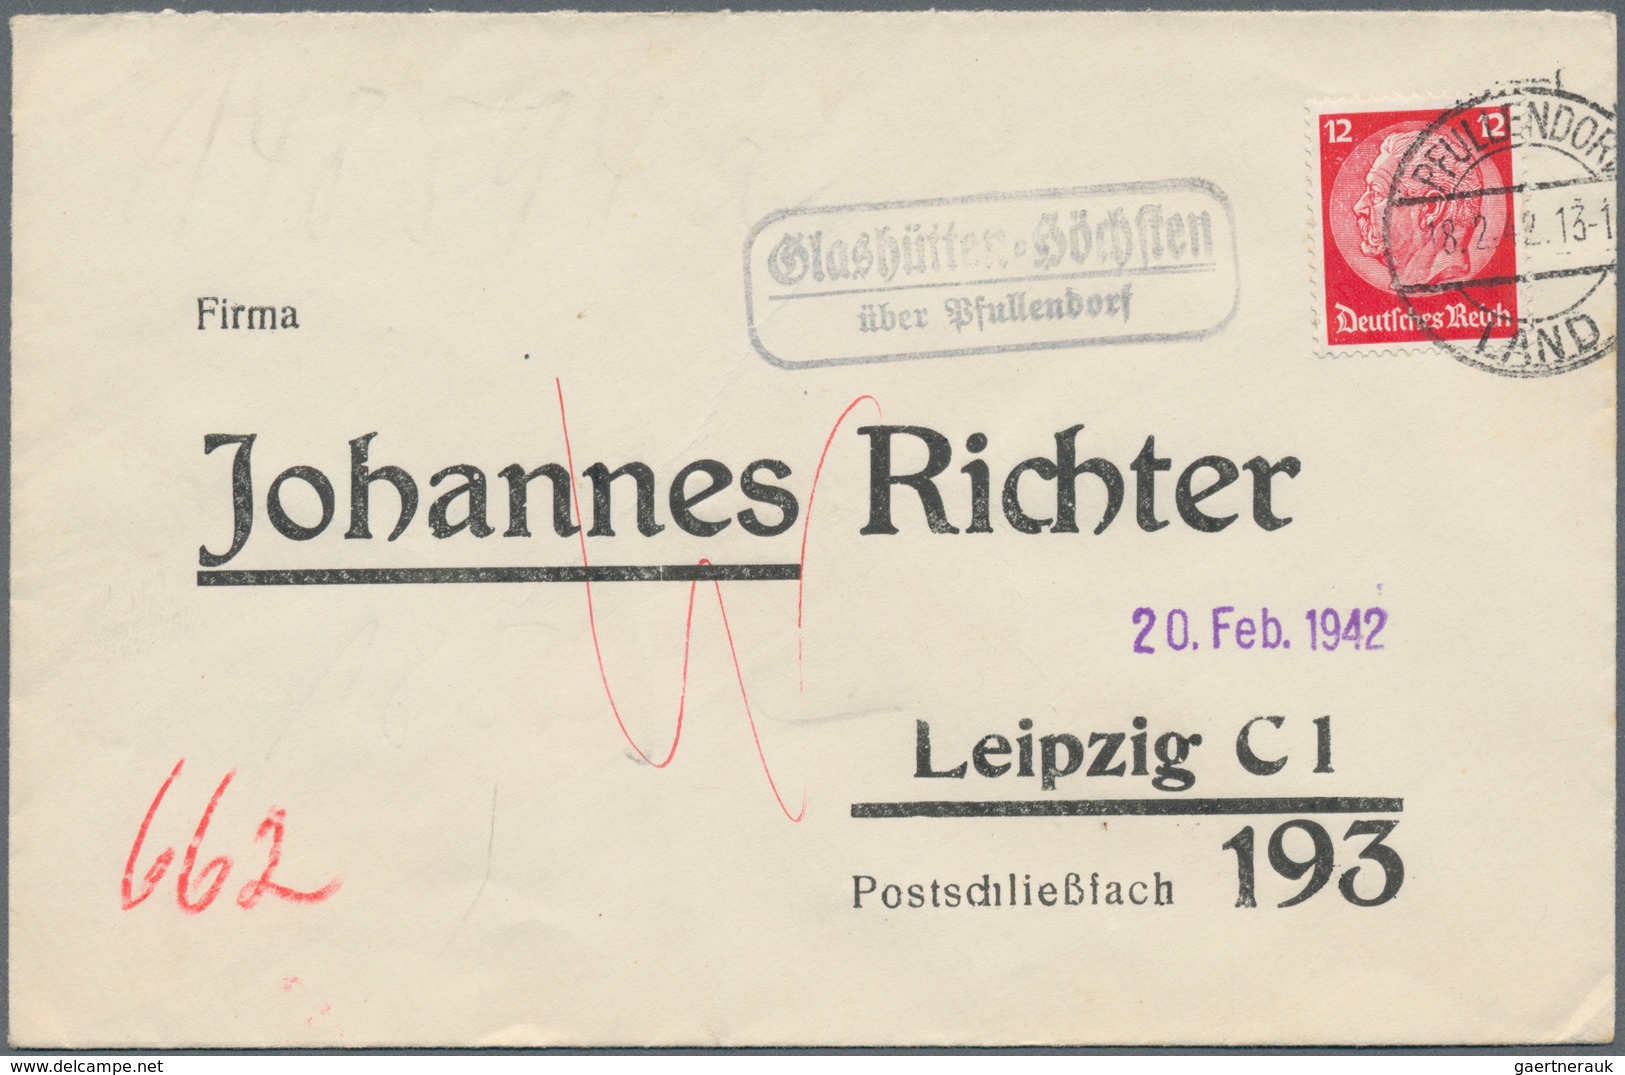 Deutschland: 1930/1990 (ca.), Partie von ca. 80 Briefen und -Karten, alle mit LANDPOST-Nebenstempeln